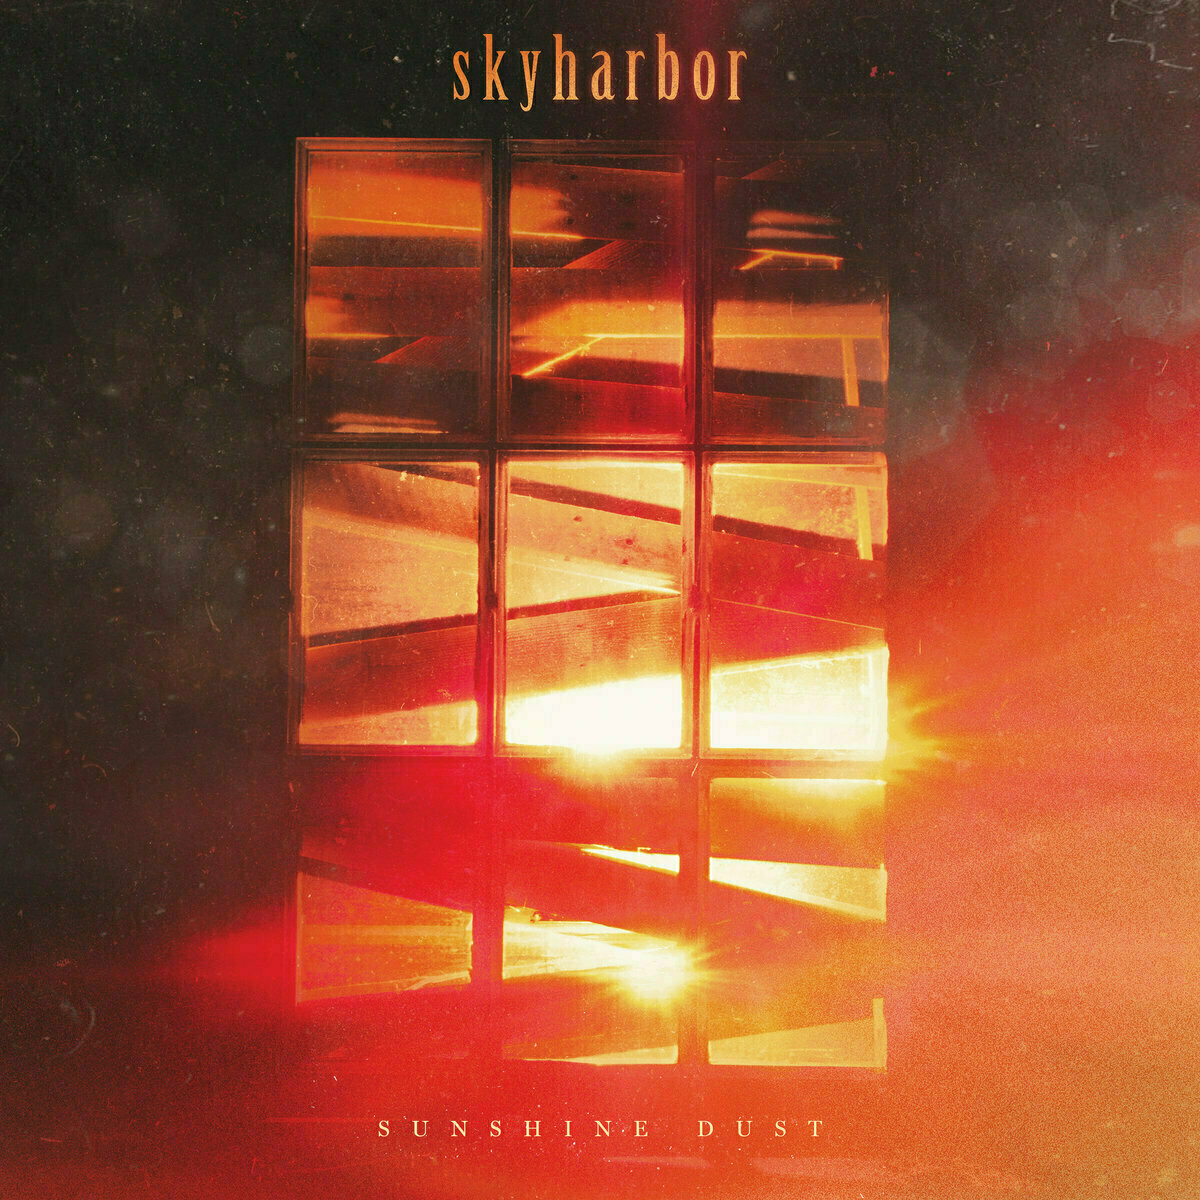 Vinyl Record Skyharbor - Sunshine Dust (LP)